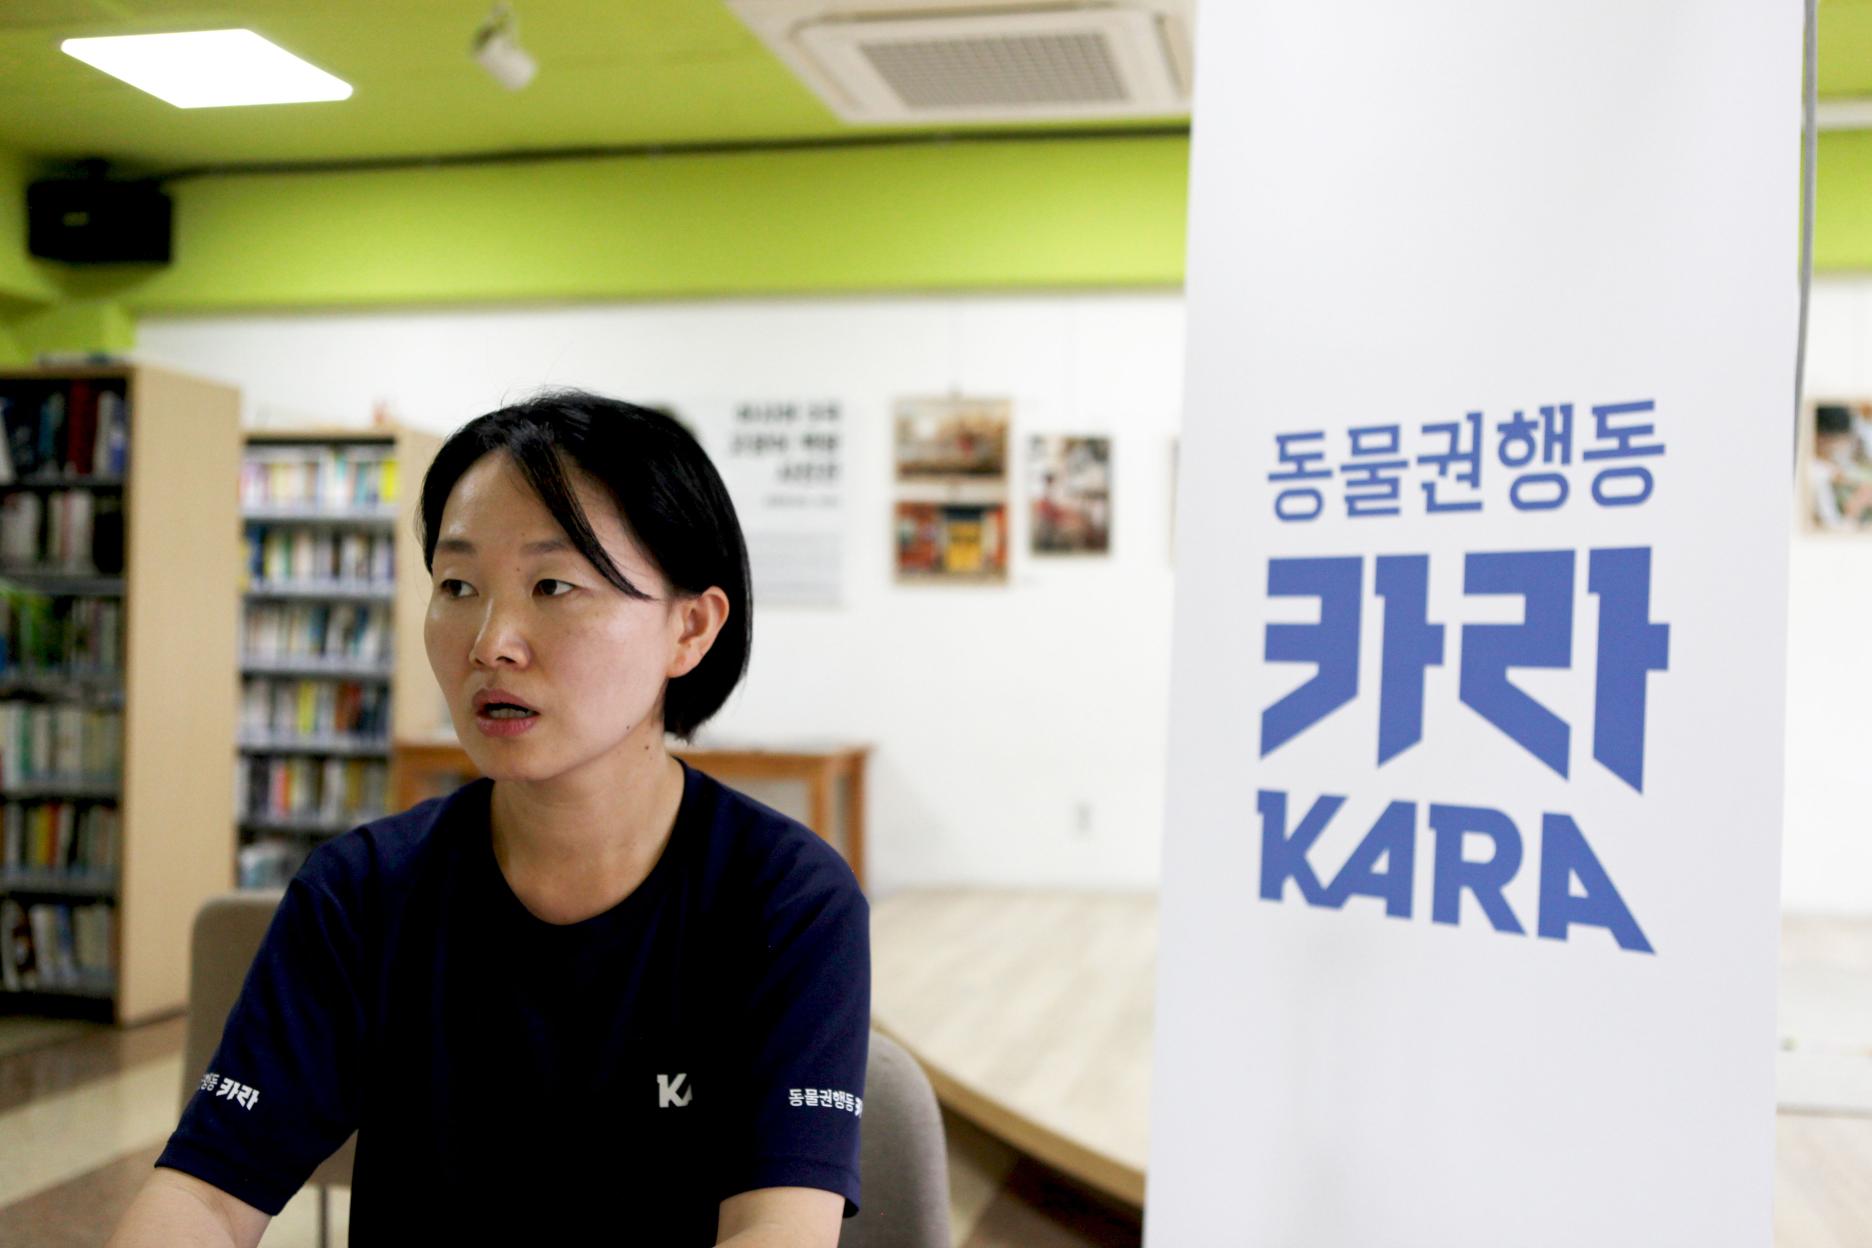 18일 위즈경제와 인터뷰를 진행하고 있는 카라의 김정아 활동가(출처=위즈경제)